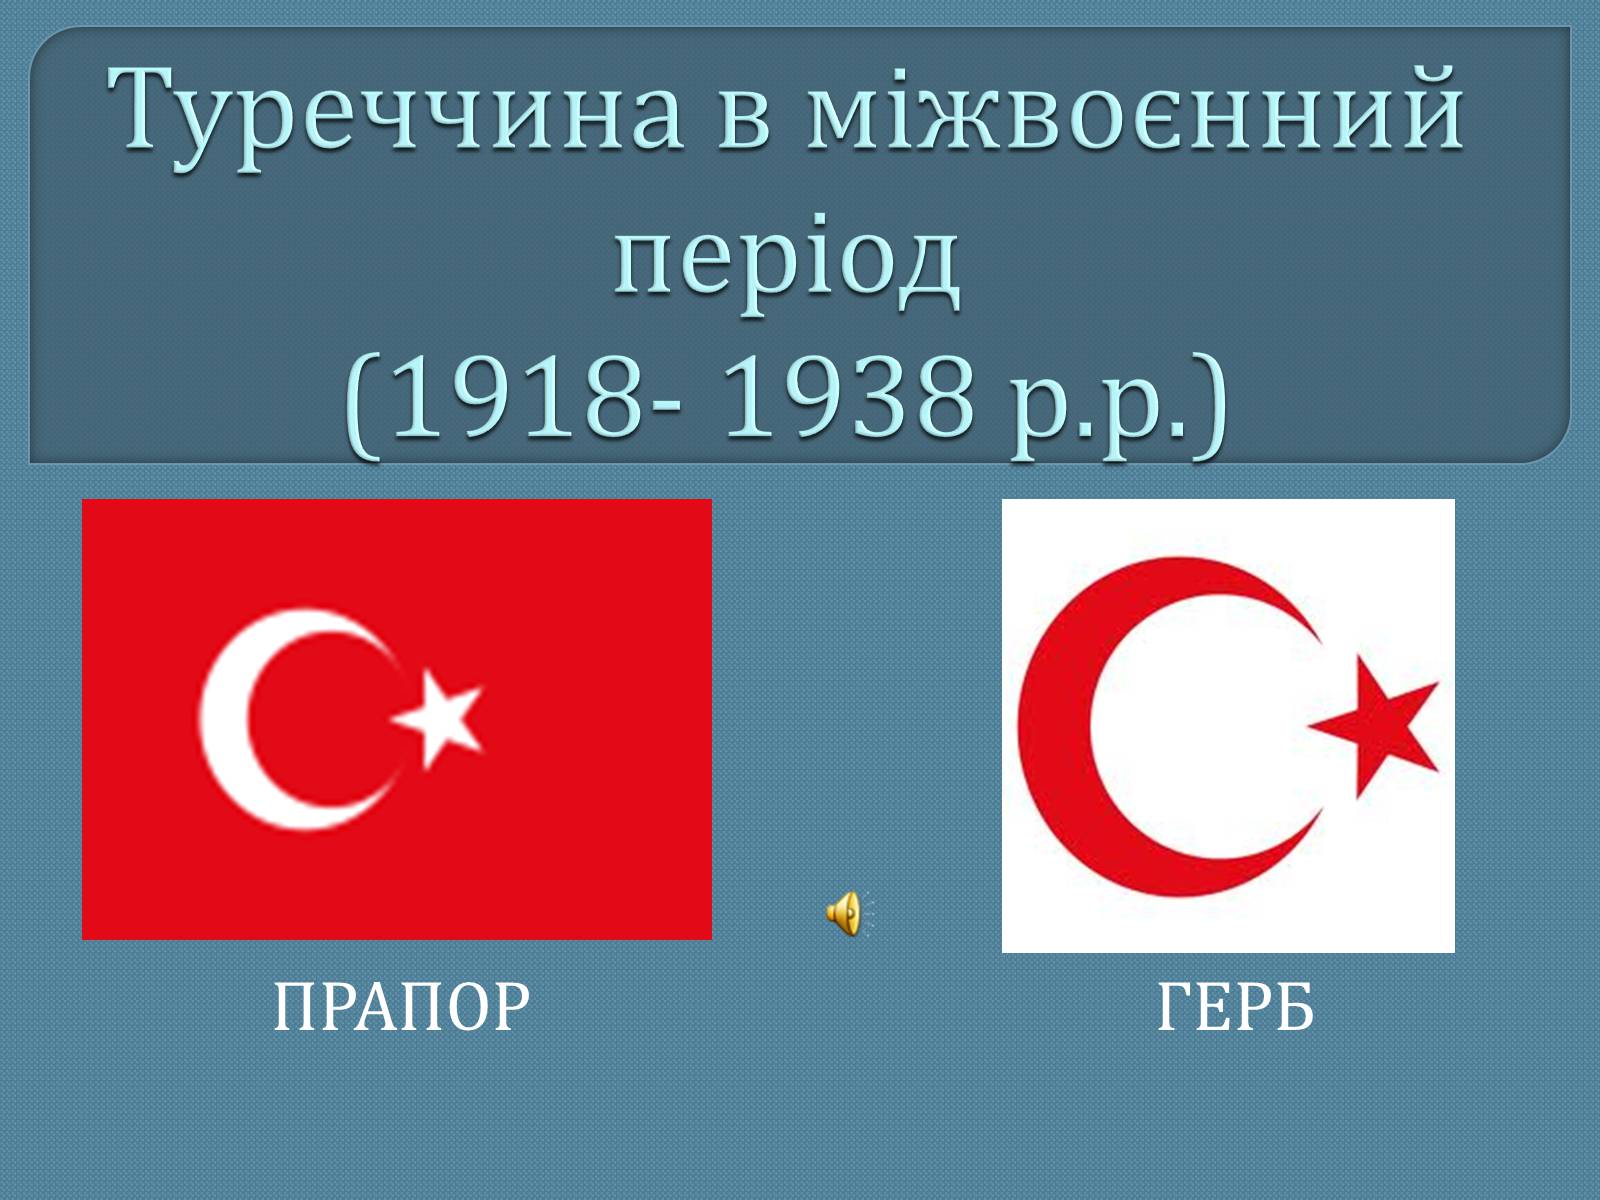 Реферат: Турецька Республіка й Іран після Другої світової війни